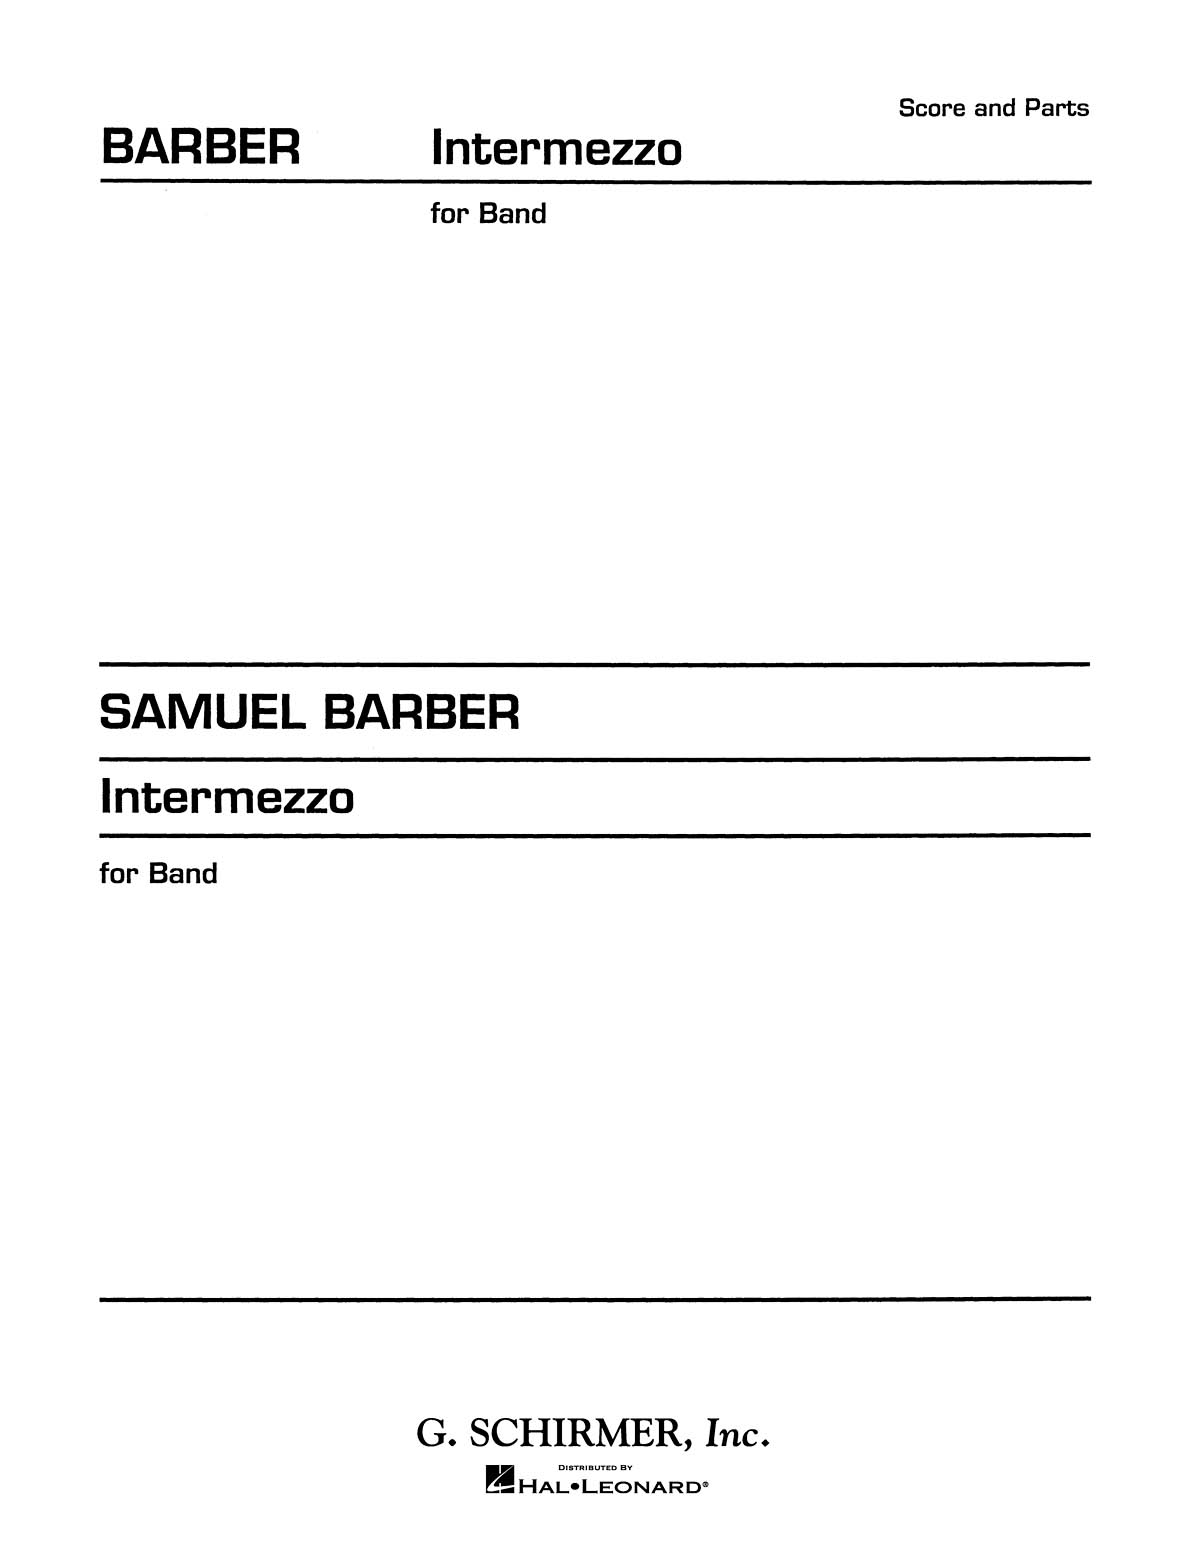 Samuel Barber: Intermezzo